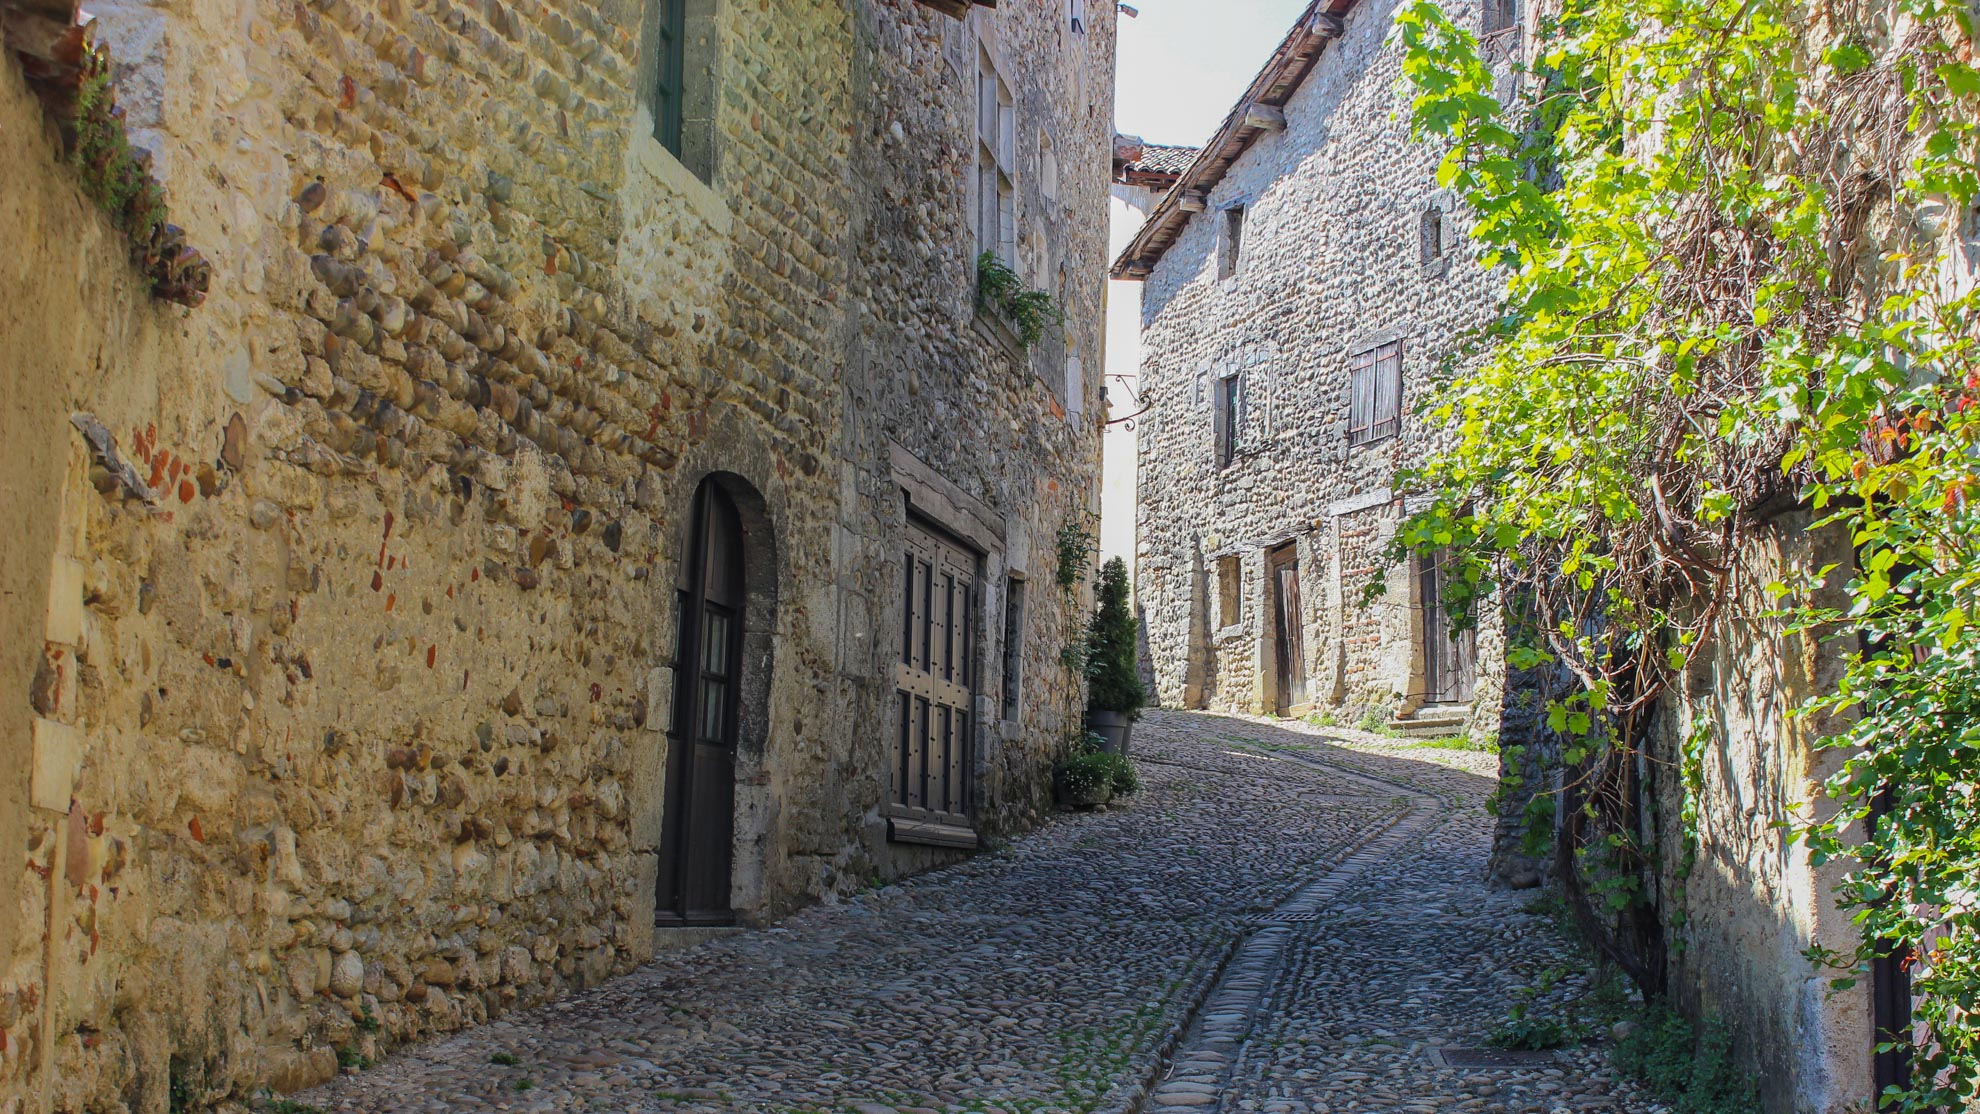 beau village en pierre avec sa rue pavée